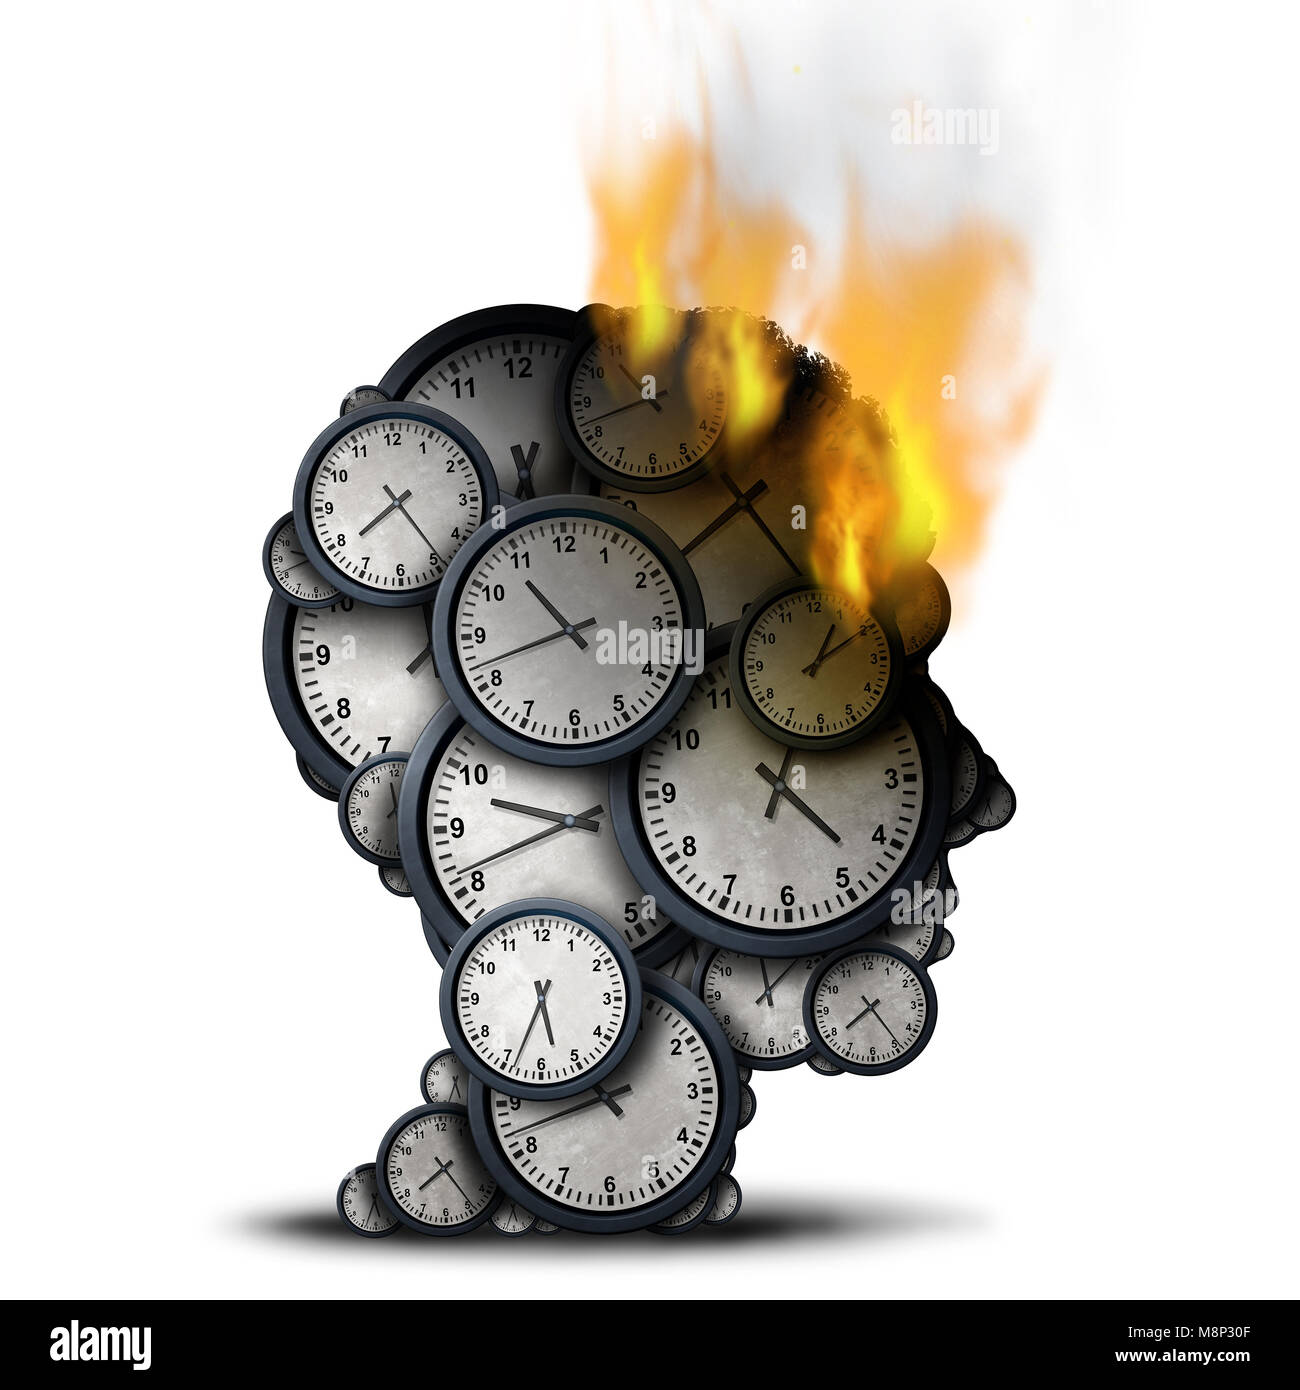 Temps de combustion concept comme un effort d'affaires idée avec une tête humaine faite d'horloges qui est sur le feu comme une métaphore de la pression limite. Banque D'Images